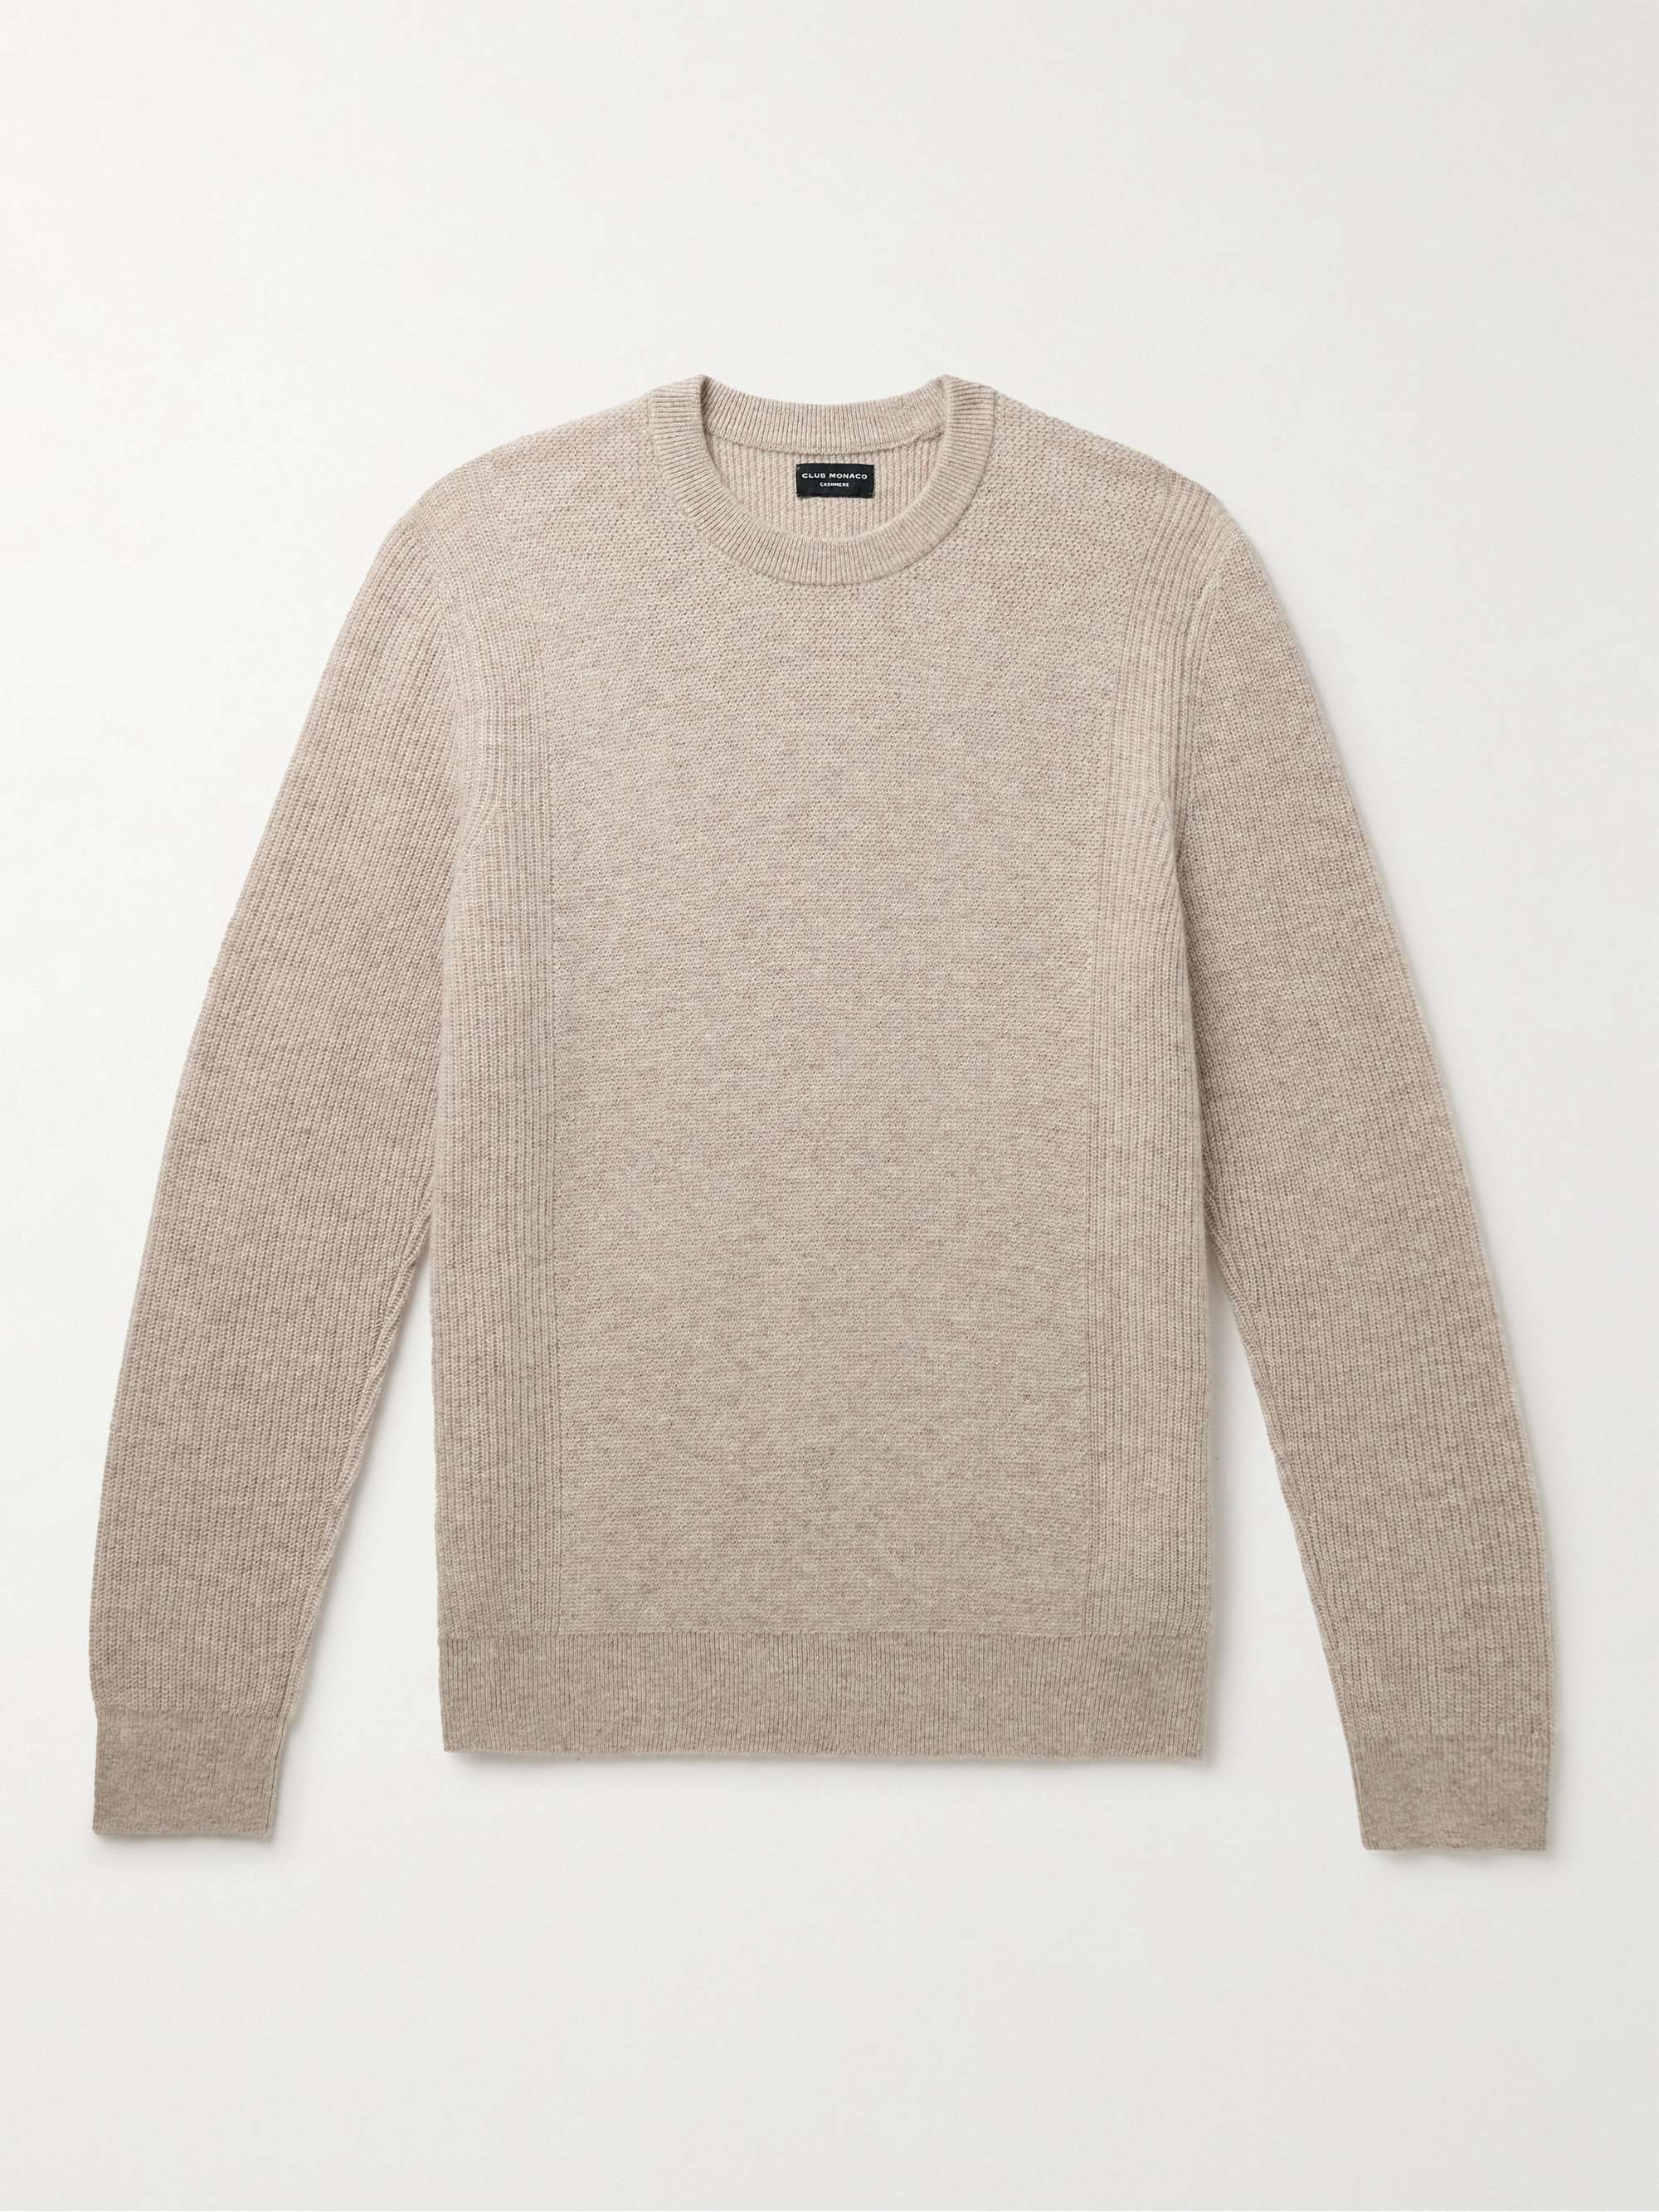 CLUB MONACO Cashmere Sweater for Men | MR PORTER